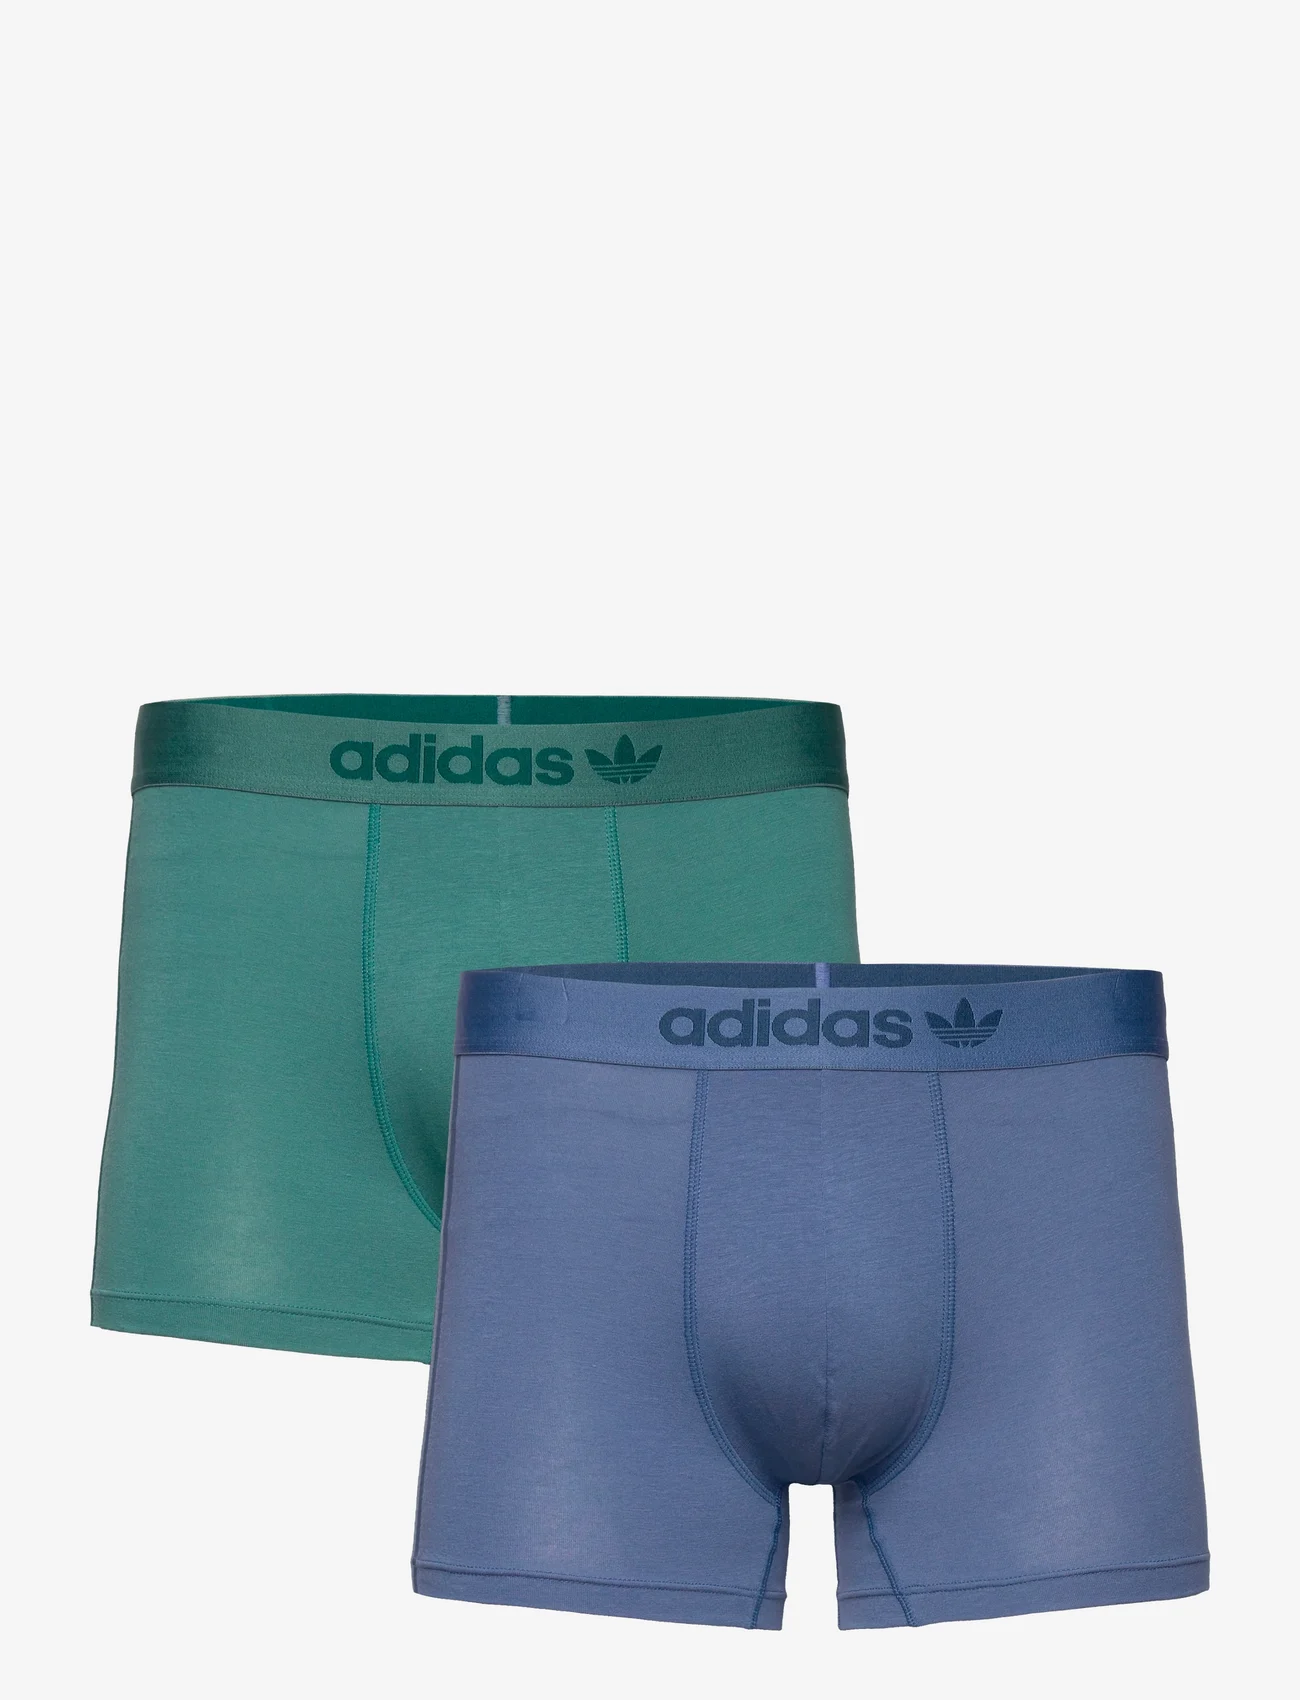 adidas Originals Underwear - Trunks - mažiausios kainos - assorted 29 - 0